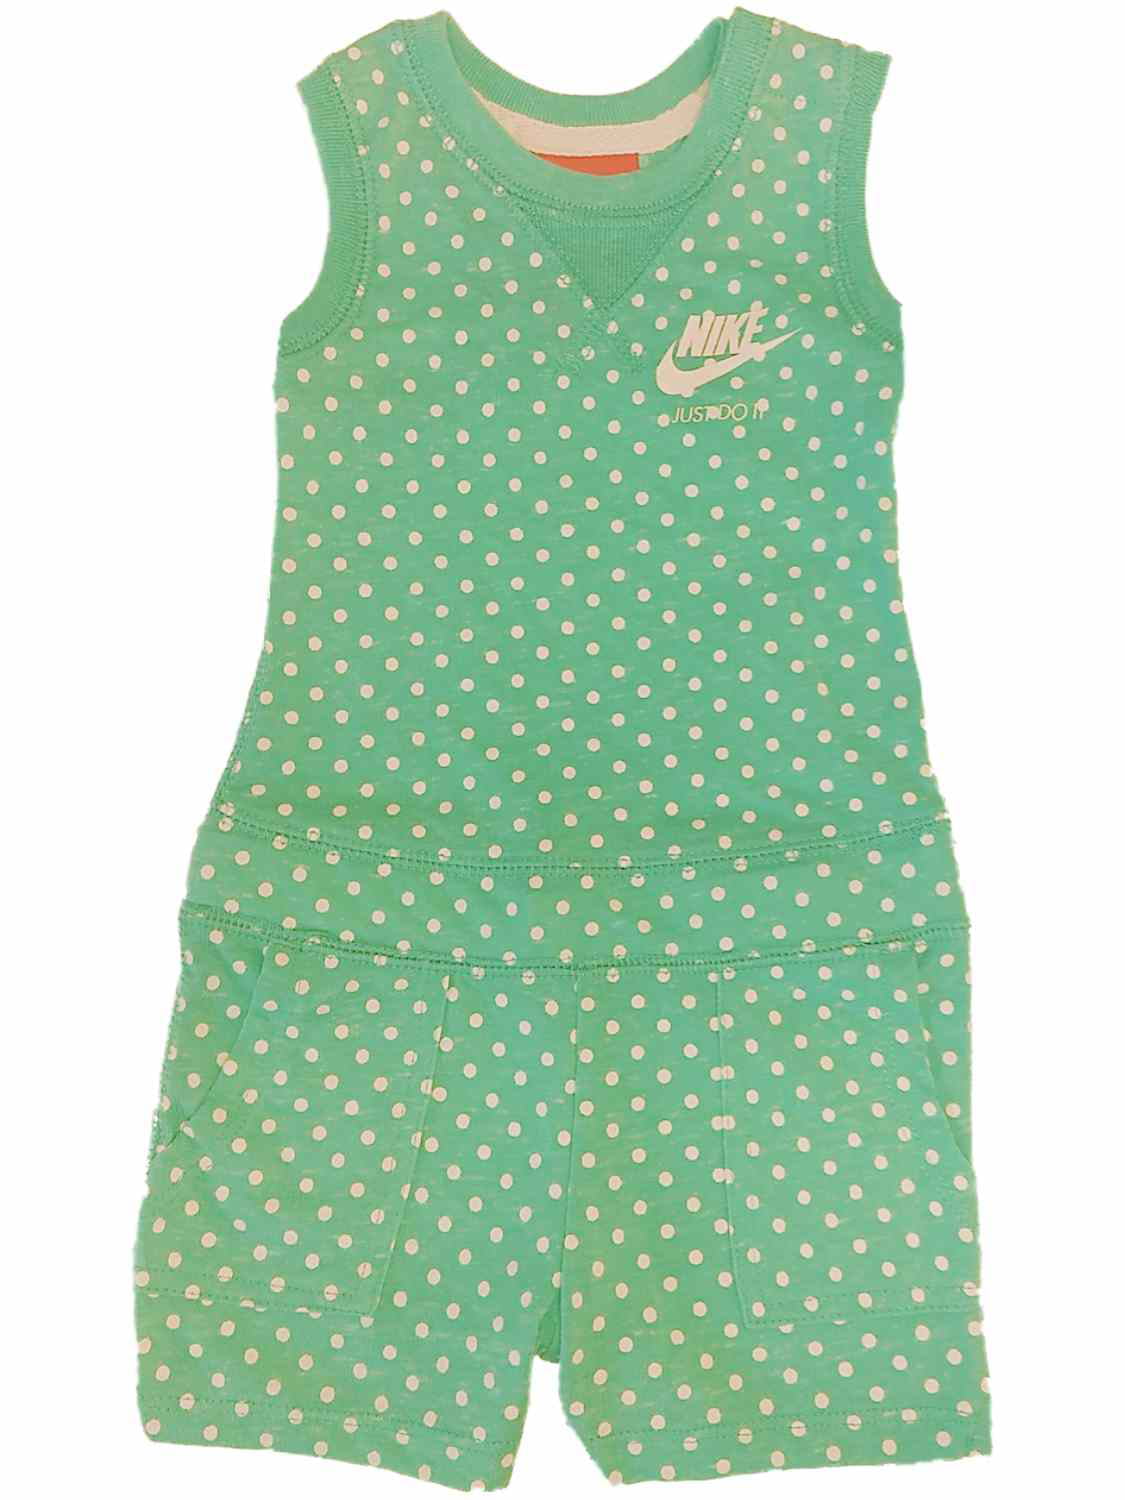 Nike - Nike Infant Girls Green Polka Dot Bodysuit Romper Jumper Baby